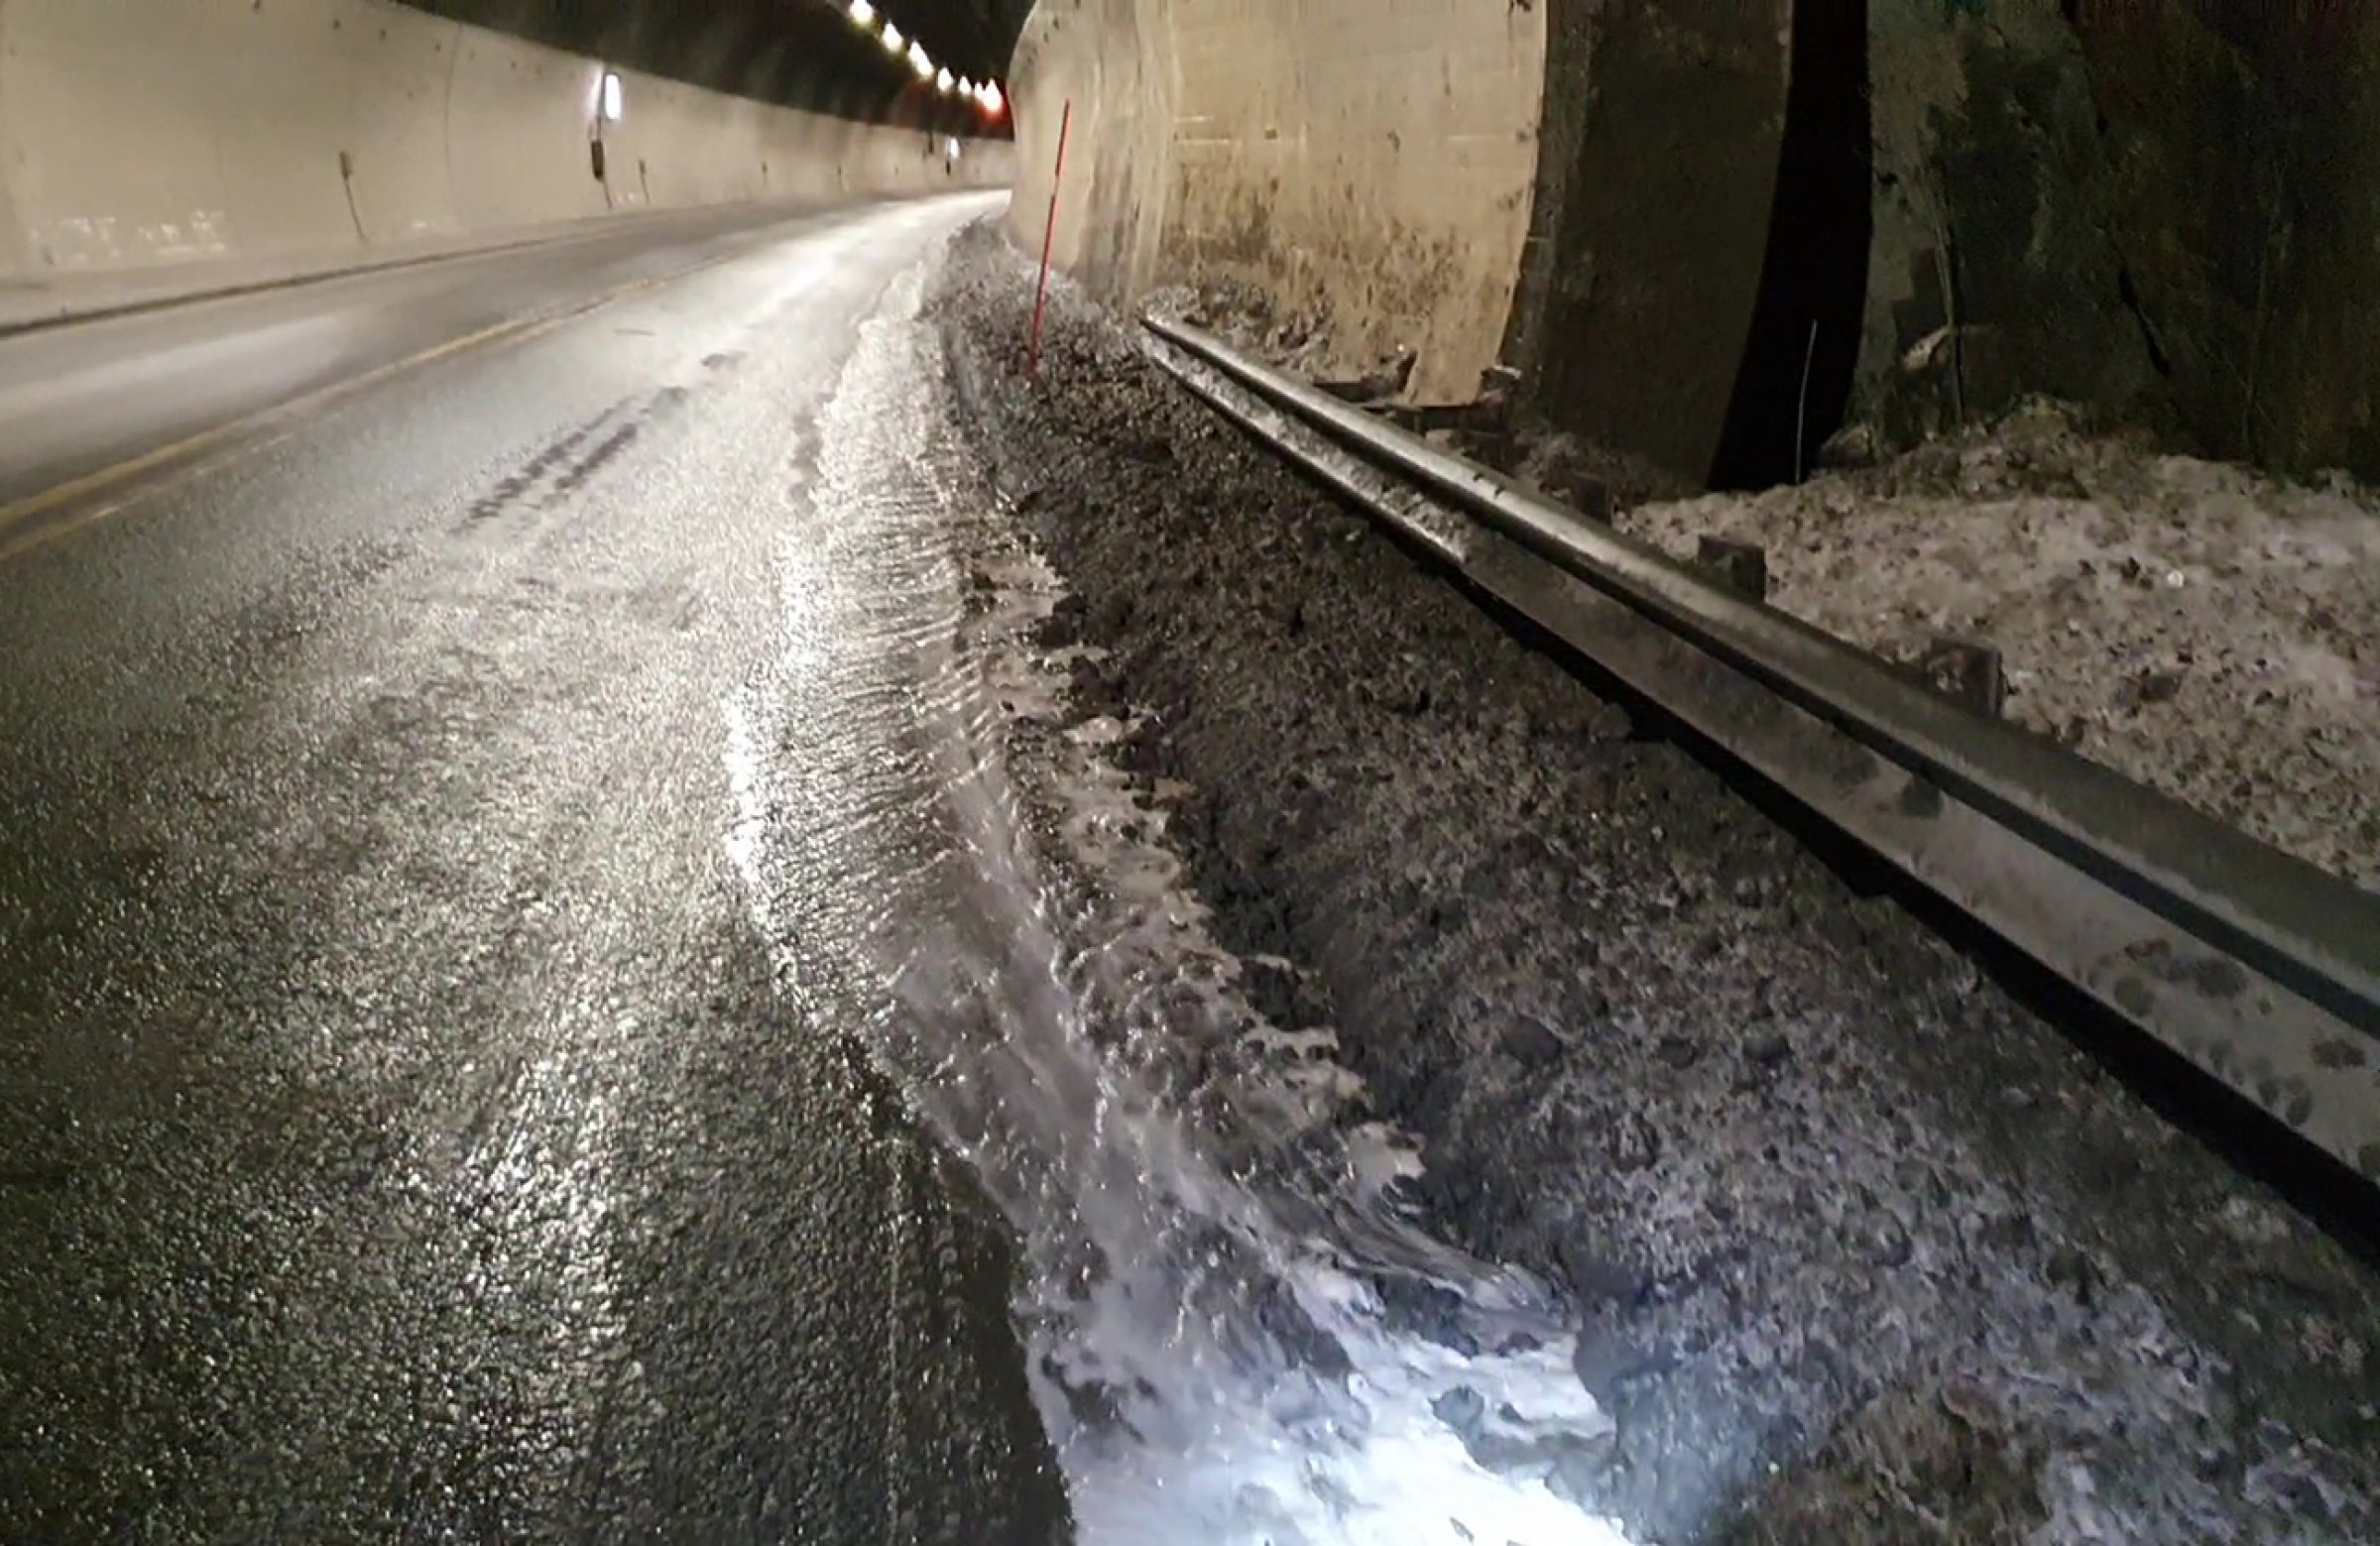 Norge har  over 1100 tuneller og tunnelvask er en viktig del av vedlikeholdet og for sikkerheten. Sand, støv og eksos samler seg i tunnelen og skaper forurensning. Dette kan være skadelig for både helse, miljø og sikkerhet. Svevestøv er en stor utfordring både på veier og i tunneler. Forurensingen kan også gi dårlig sikt i tunnelen. På bildet sees vaskevann som renner ut av Stavsjøfjelltunellen etter at vaskebilen har gjort sitt for å rengjøre tunellen. Vannet renner ut til Homla. Foto: Anders Foldvik, NINA